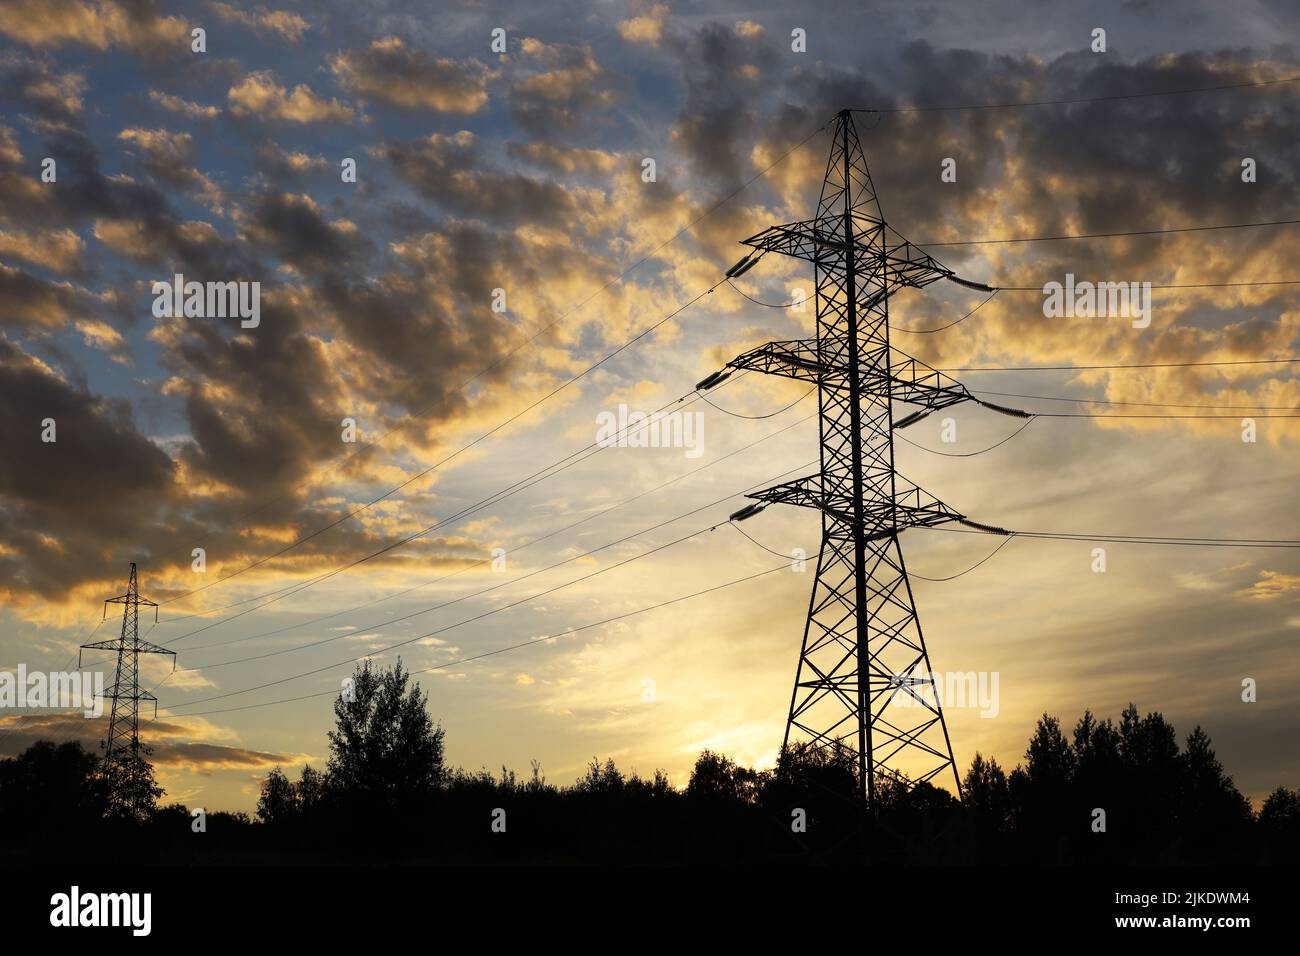 Silhouette di torri ad alta tensione con fili elettrici sullo sfondo del cielo del tramonto e delle nuvole scure. Linee di trasmissione elettrica nella foresta serale Foto Stock